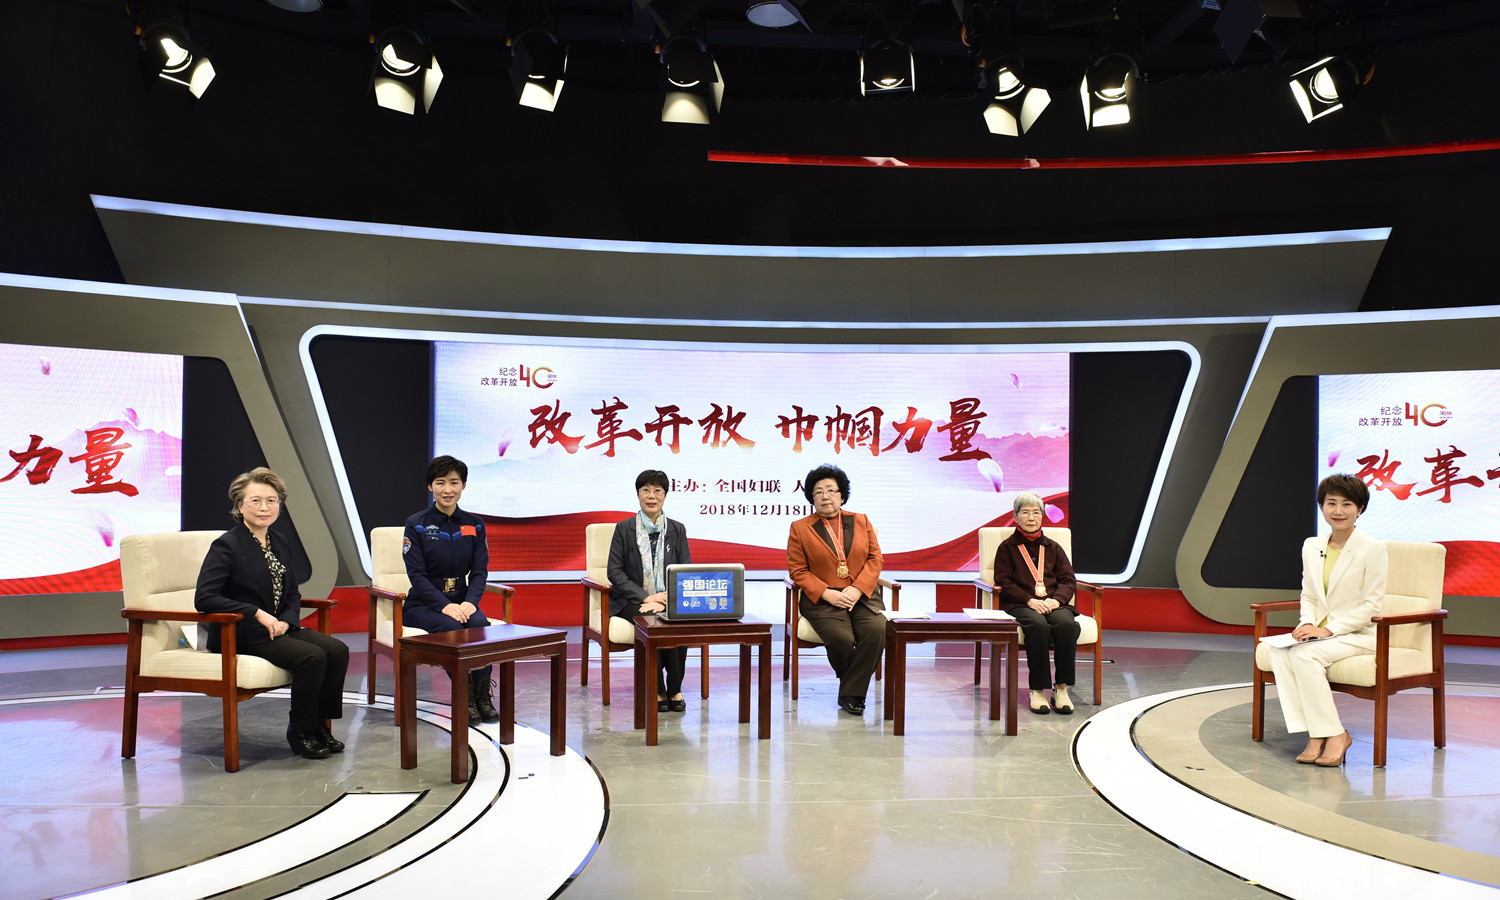  “改革开放 巾帼力量”网络访谈在京举行